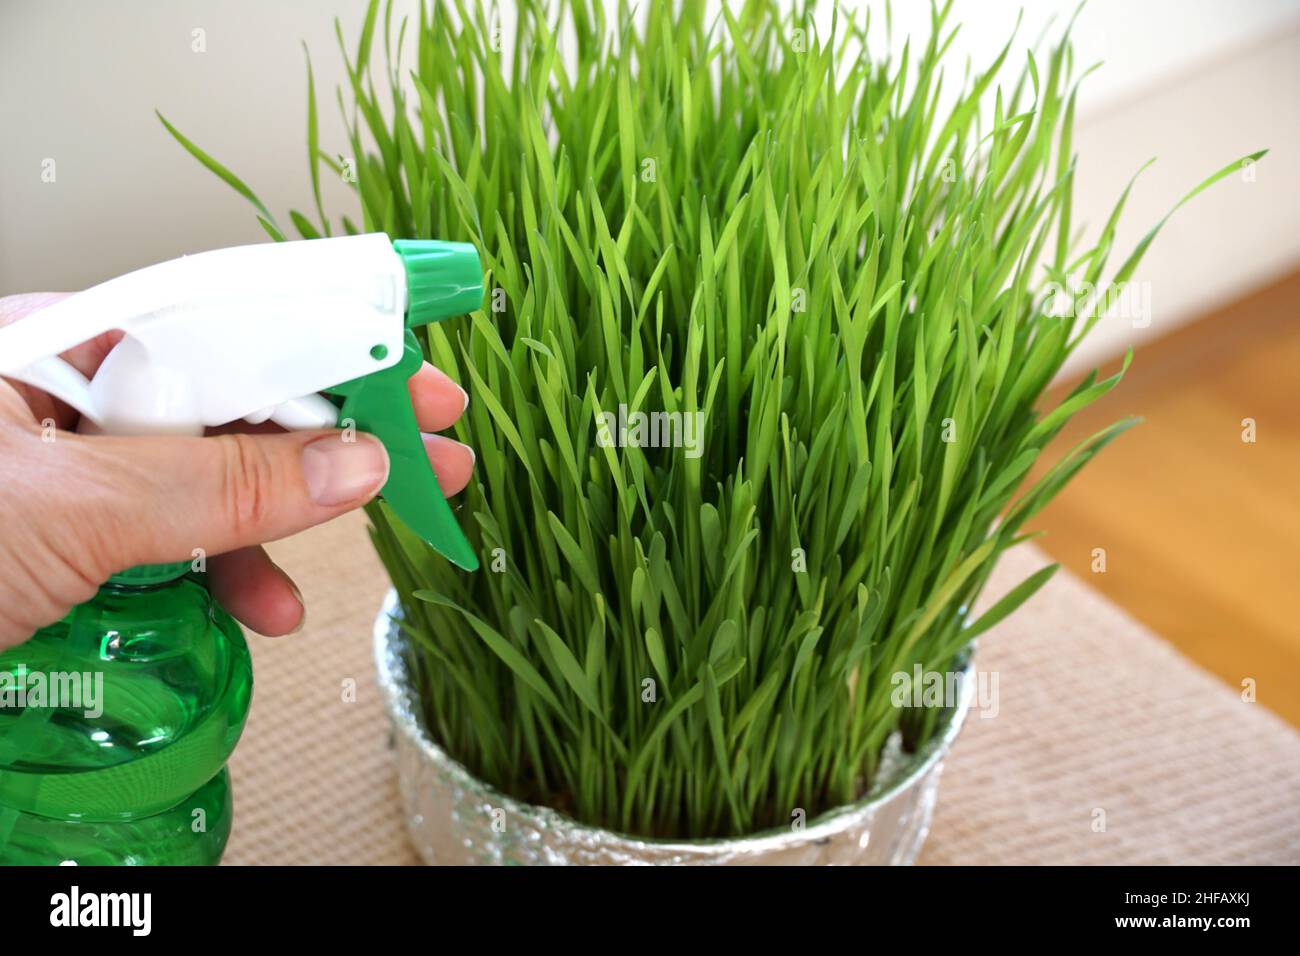 Eine weibliche Hand mit Sprühwasser in der grünen Plastikflasche, die eine grüne Pflanze wie Gras sprüht Stockfoto